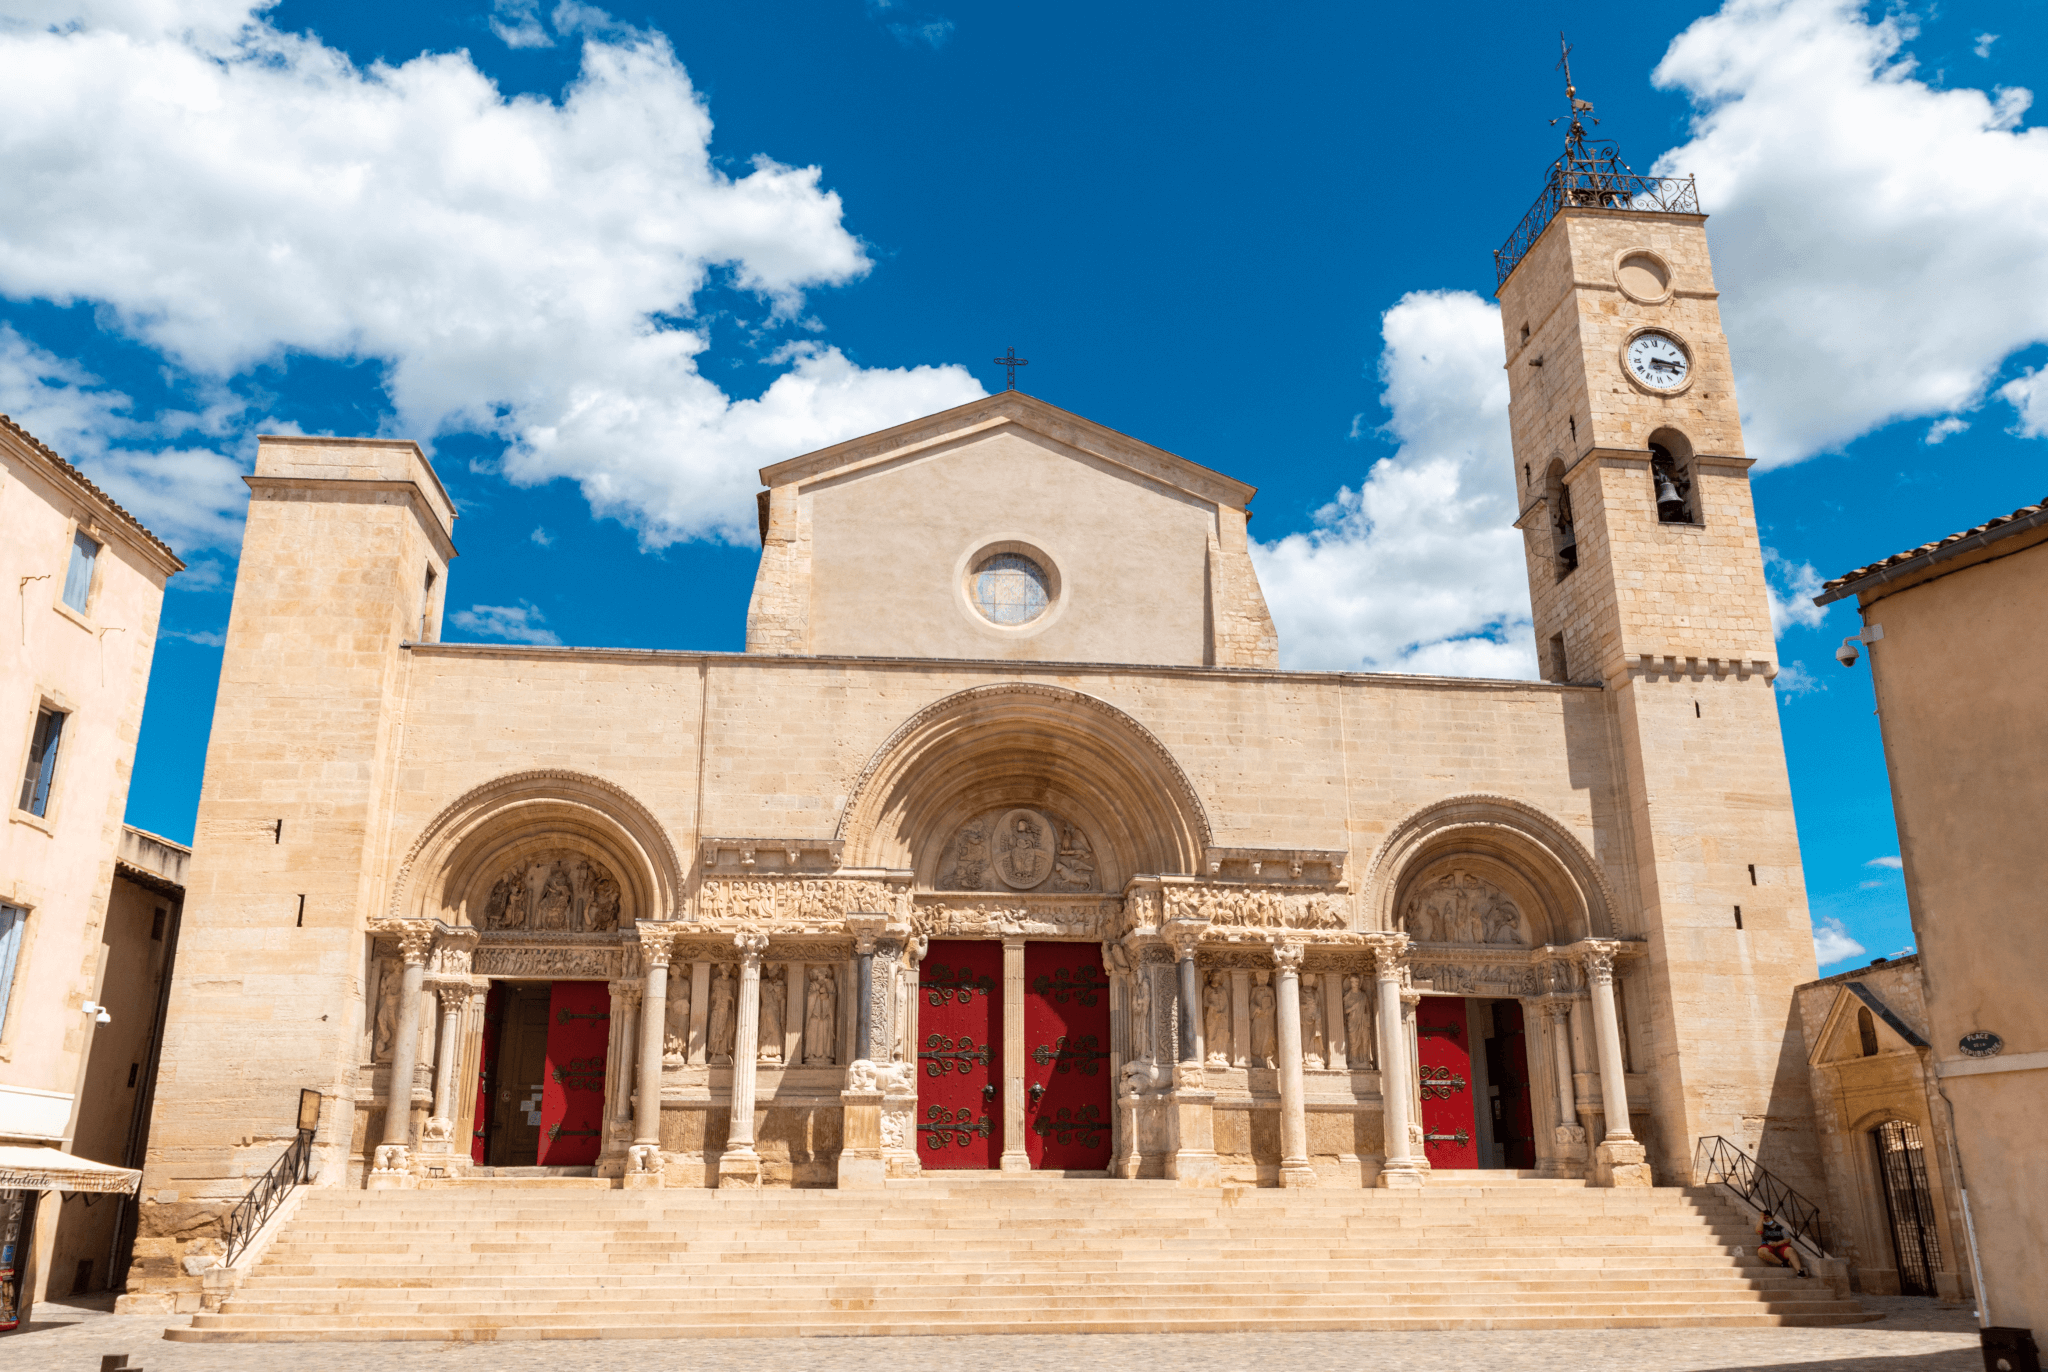 L'Abbatiale Saint-Gilles une étape majeure sur la route de Saint Jacques de Compostelle ©Sites touristiques du Gard 